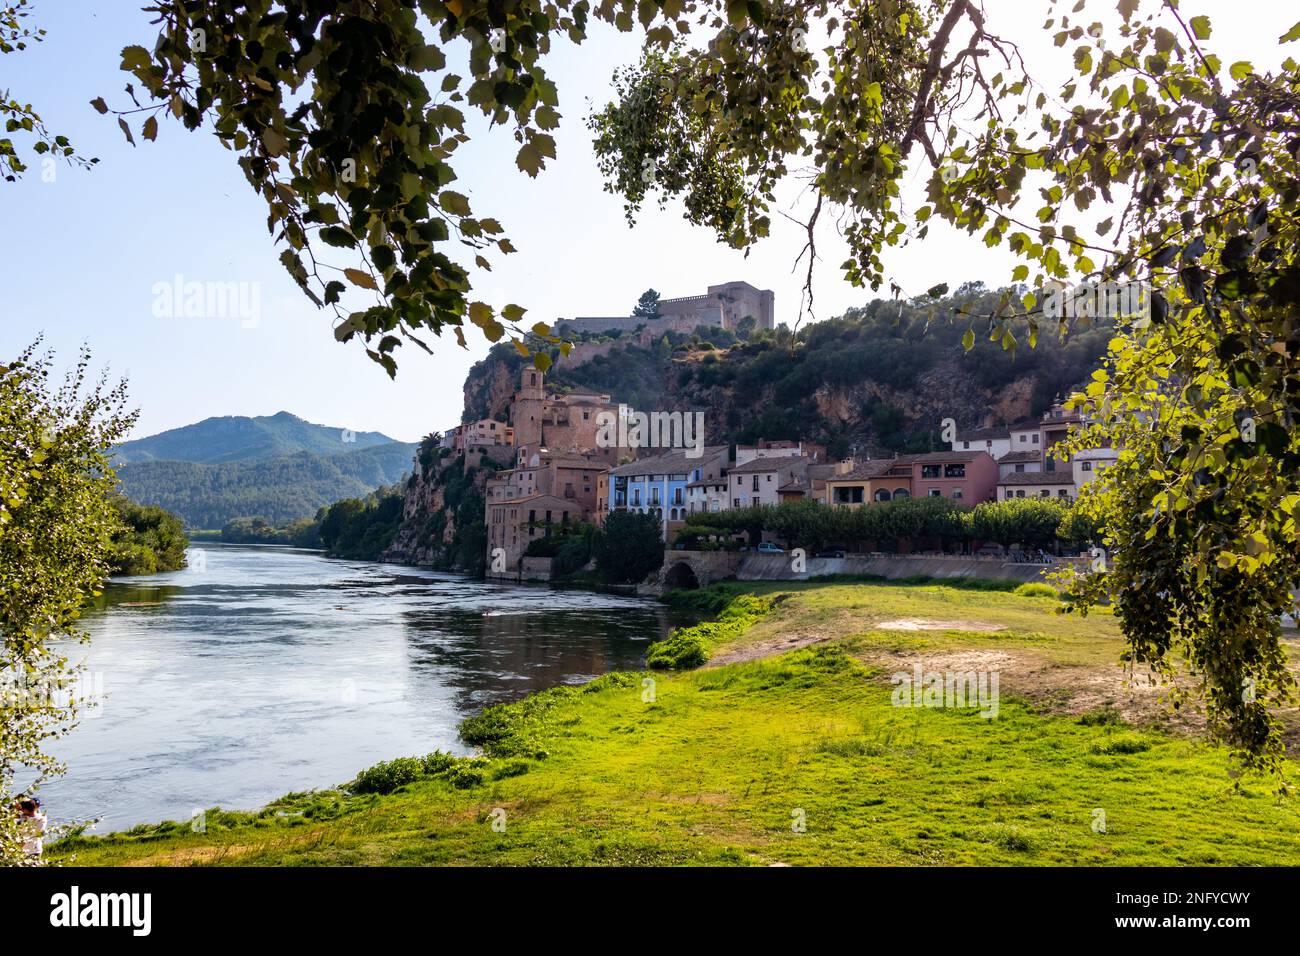 Miravet, uno de los pueblos más bonitos de Tarragone. Se encuentra en un meandro del río Ebro y aprece dominado por un impresionante castillo templier Banque D'Images